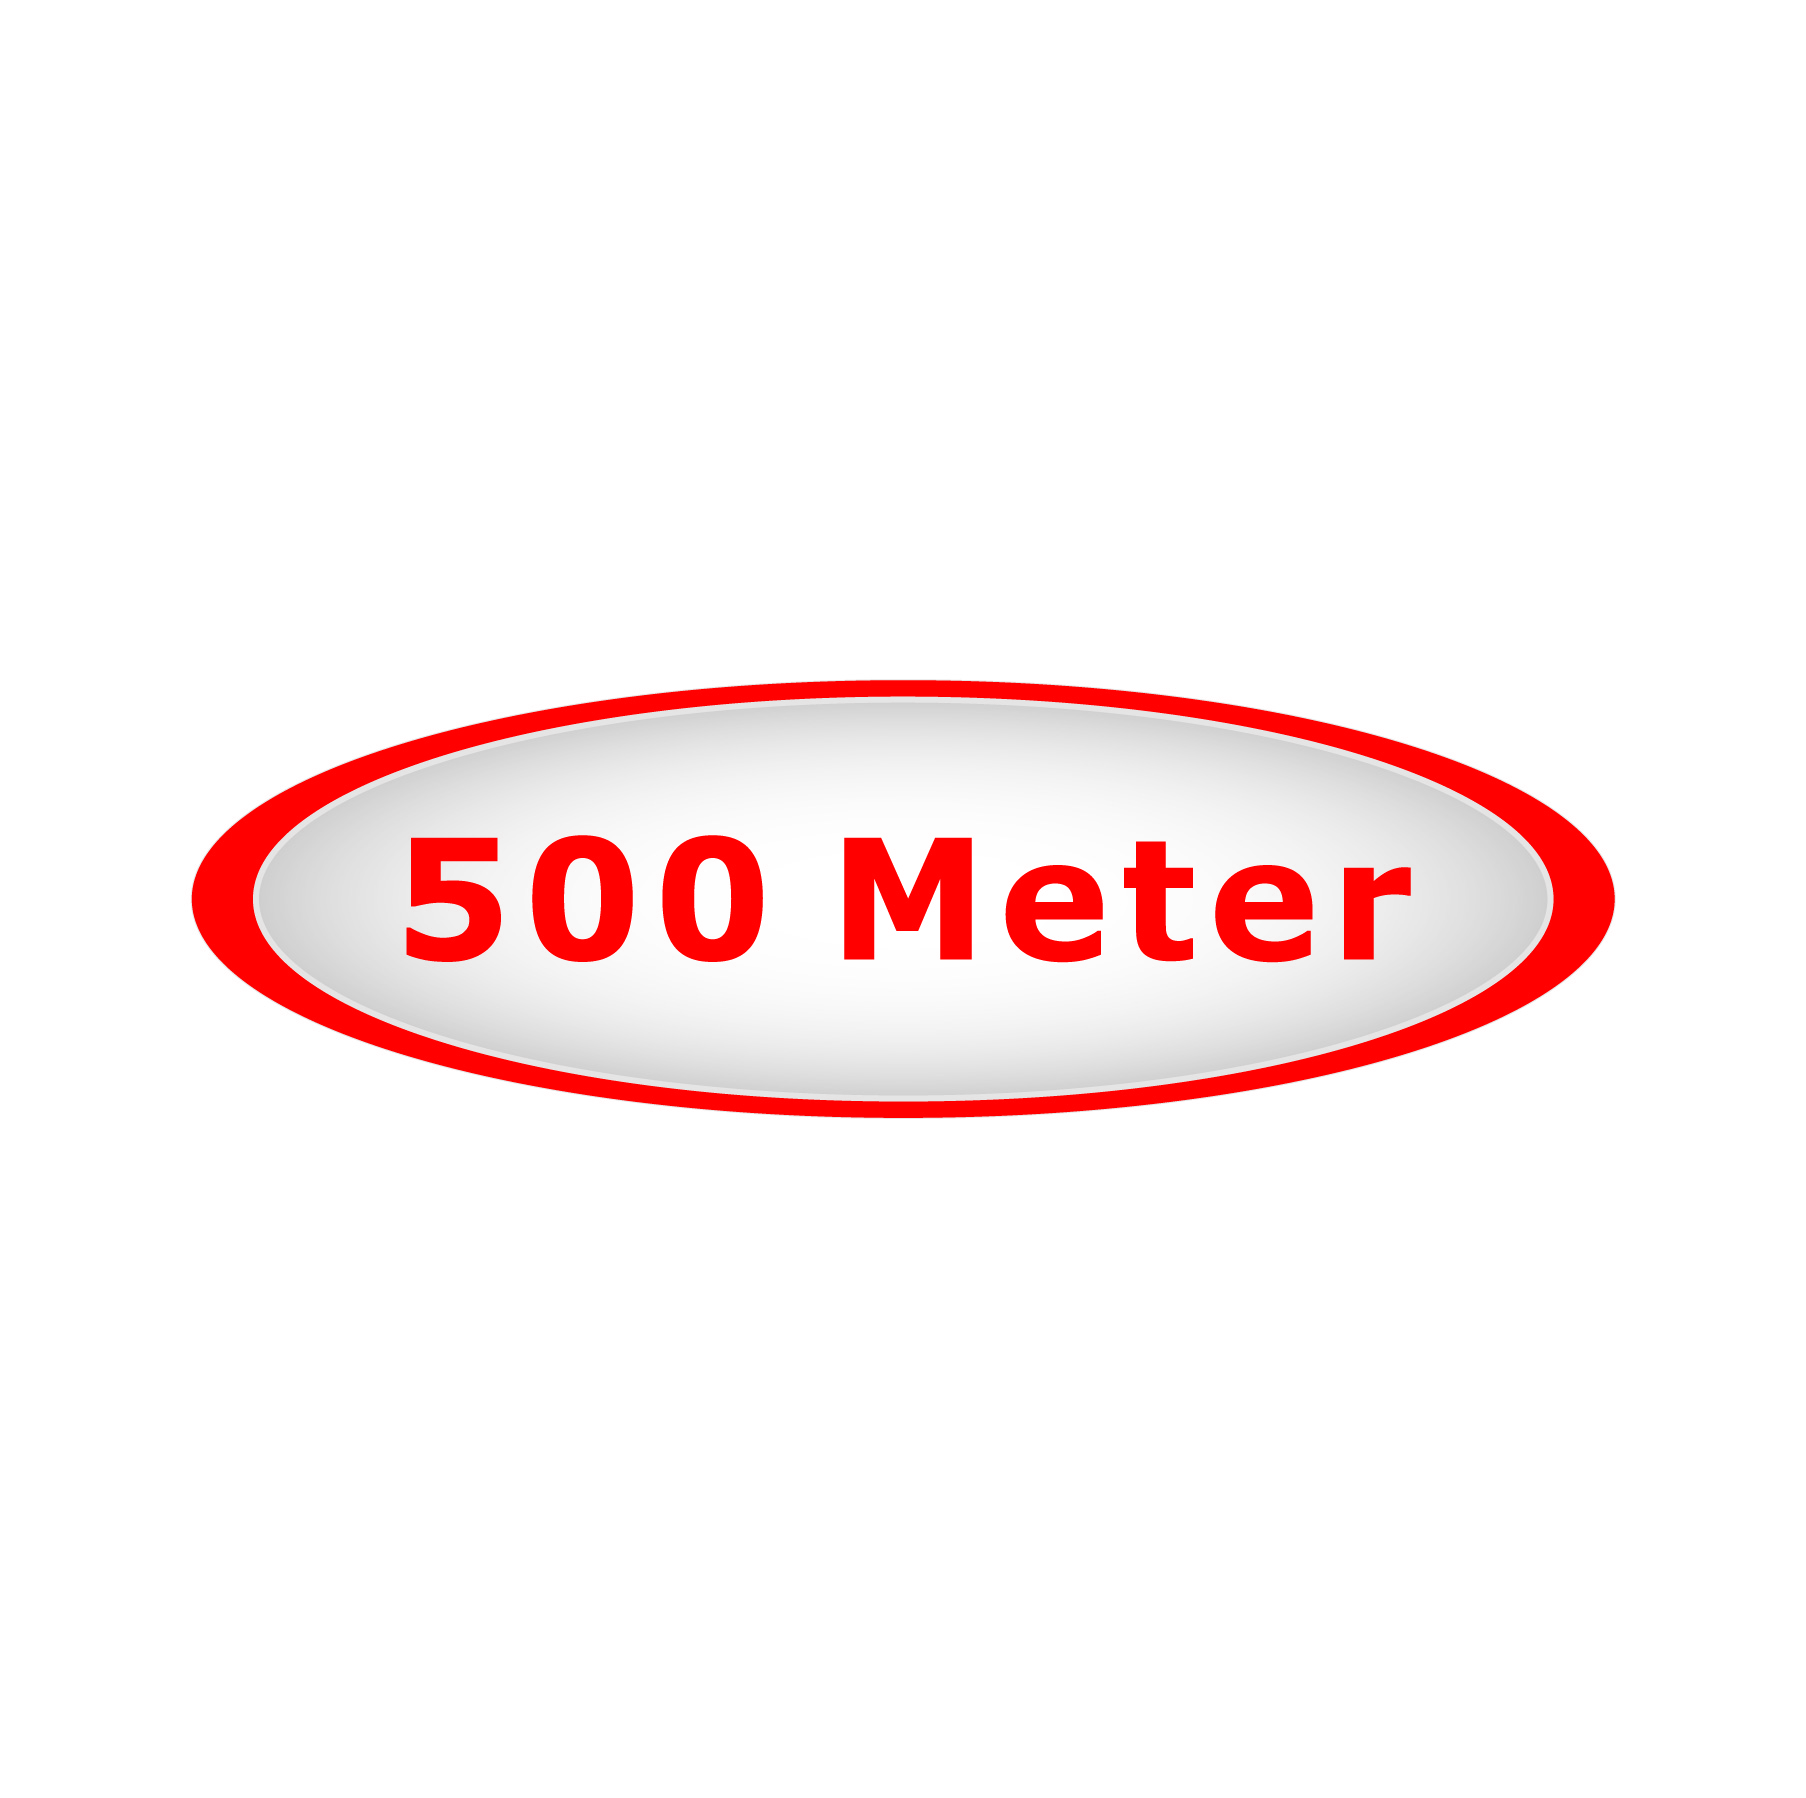 500 meter